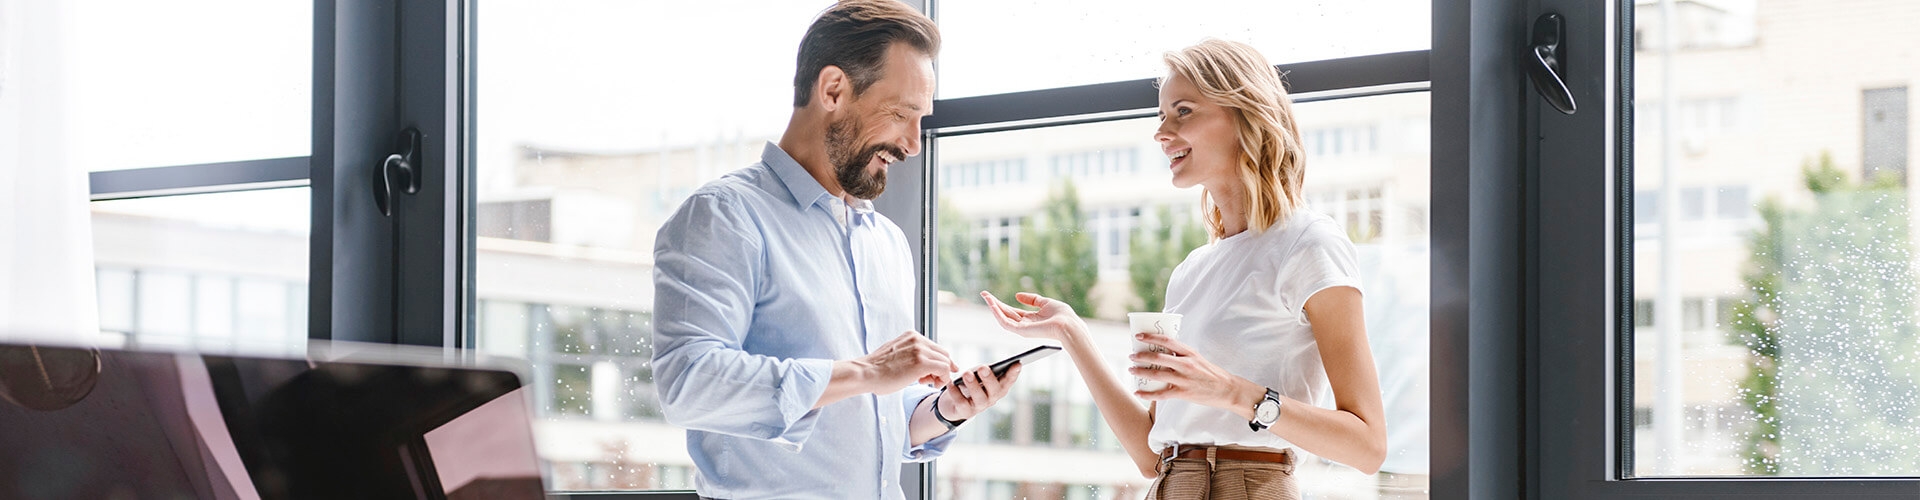 Cartera de Inversión Premium - Hombre con camisa y móvil en la mano, y mujer de negocios con café en la mano sonriendo en la oficina